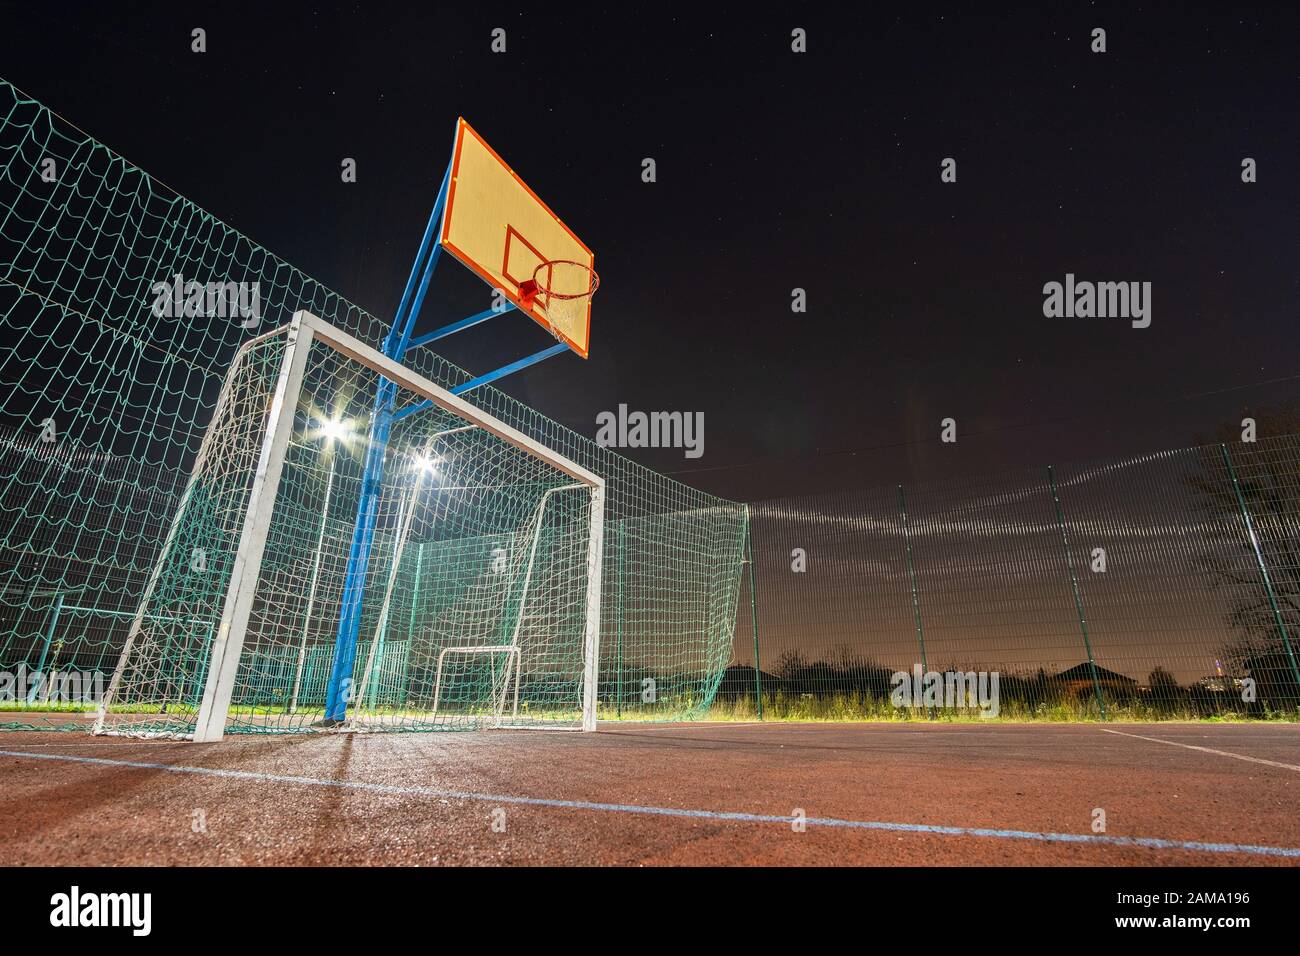 Im freien Mini Fußball- und Basketballplatz mit Ball Gate und Korb mit hoher Schutzzaun hell mit Spotlight Lampen beleuchtet umgeben Stockfoto